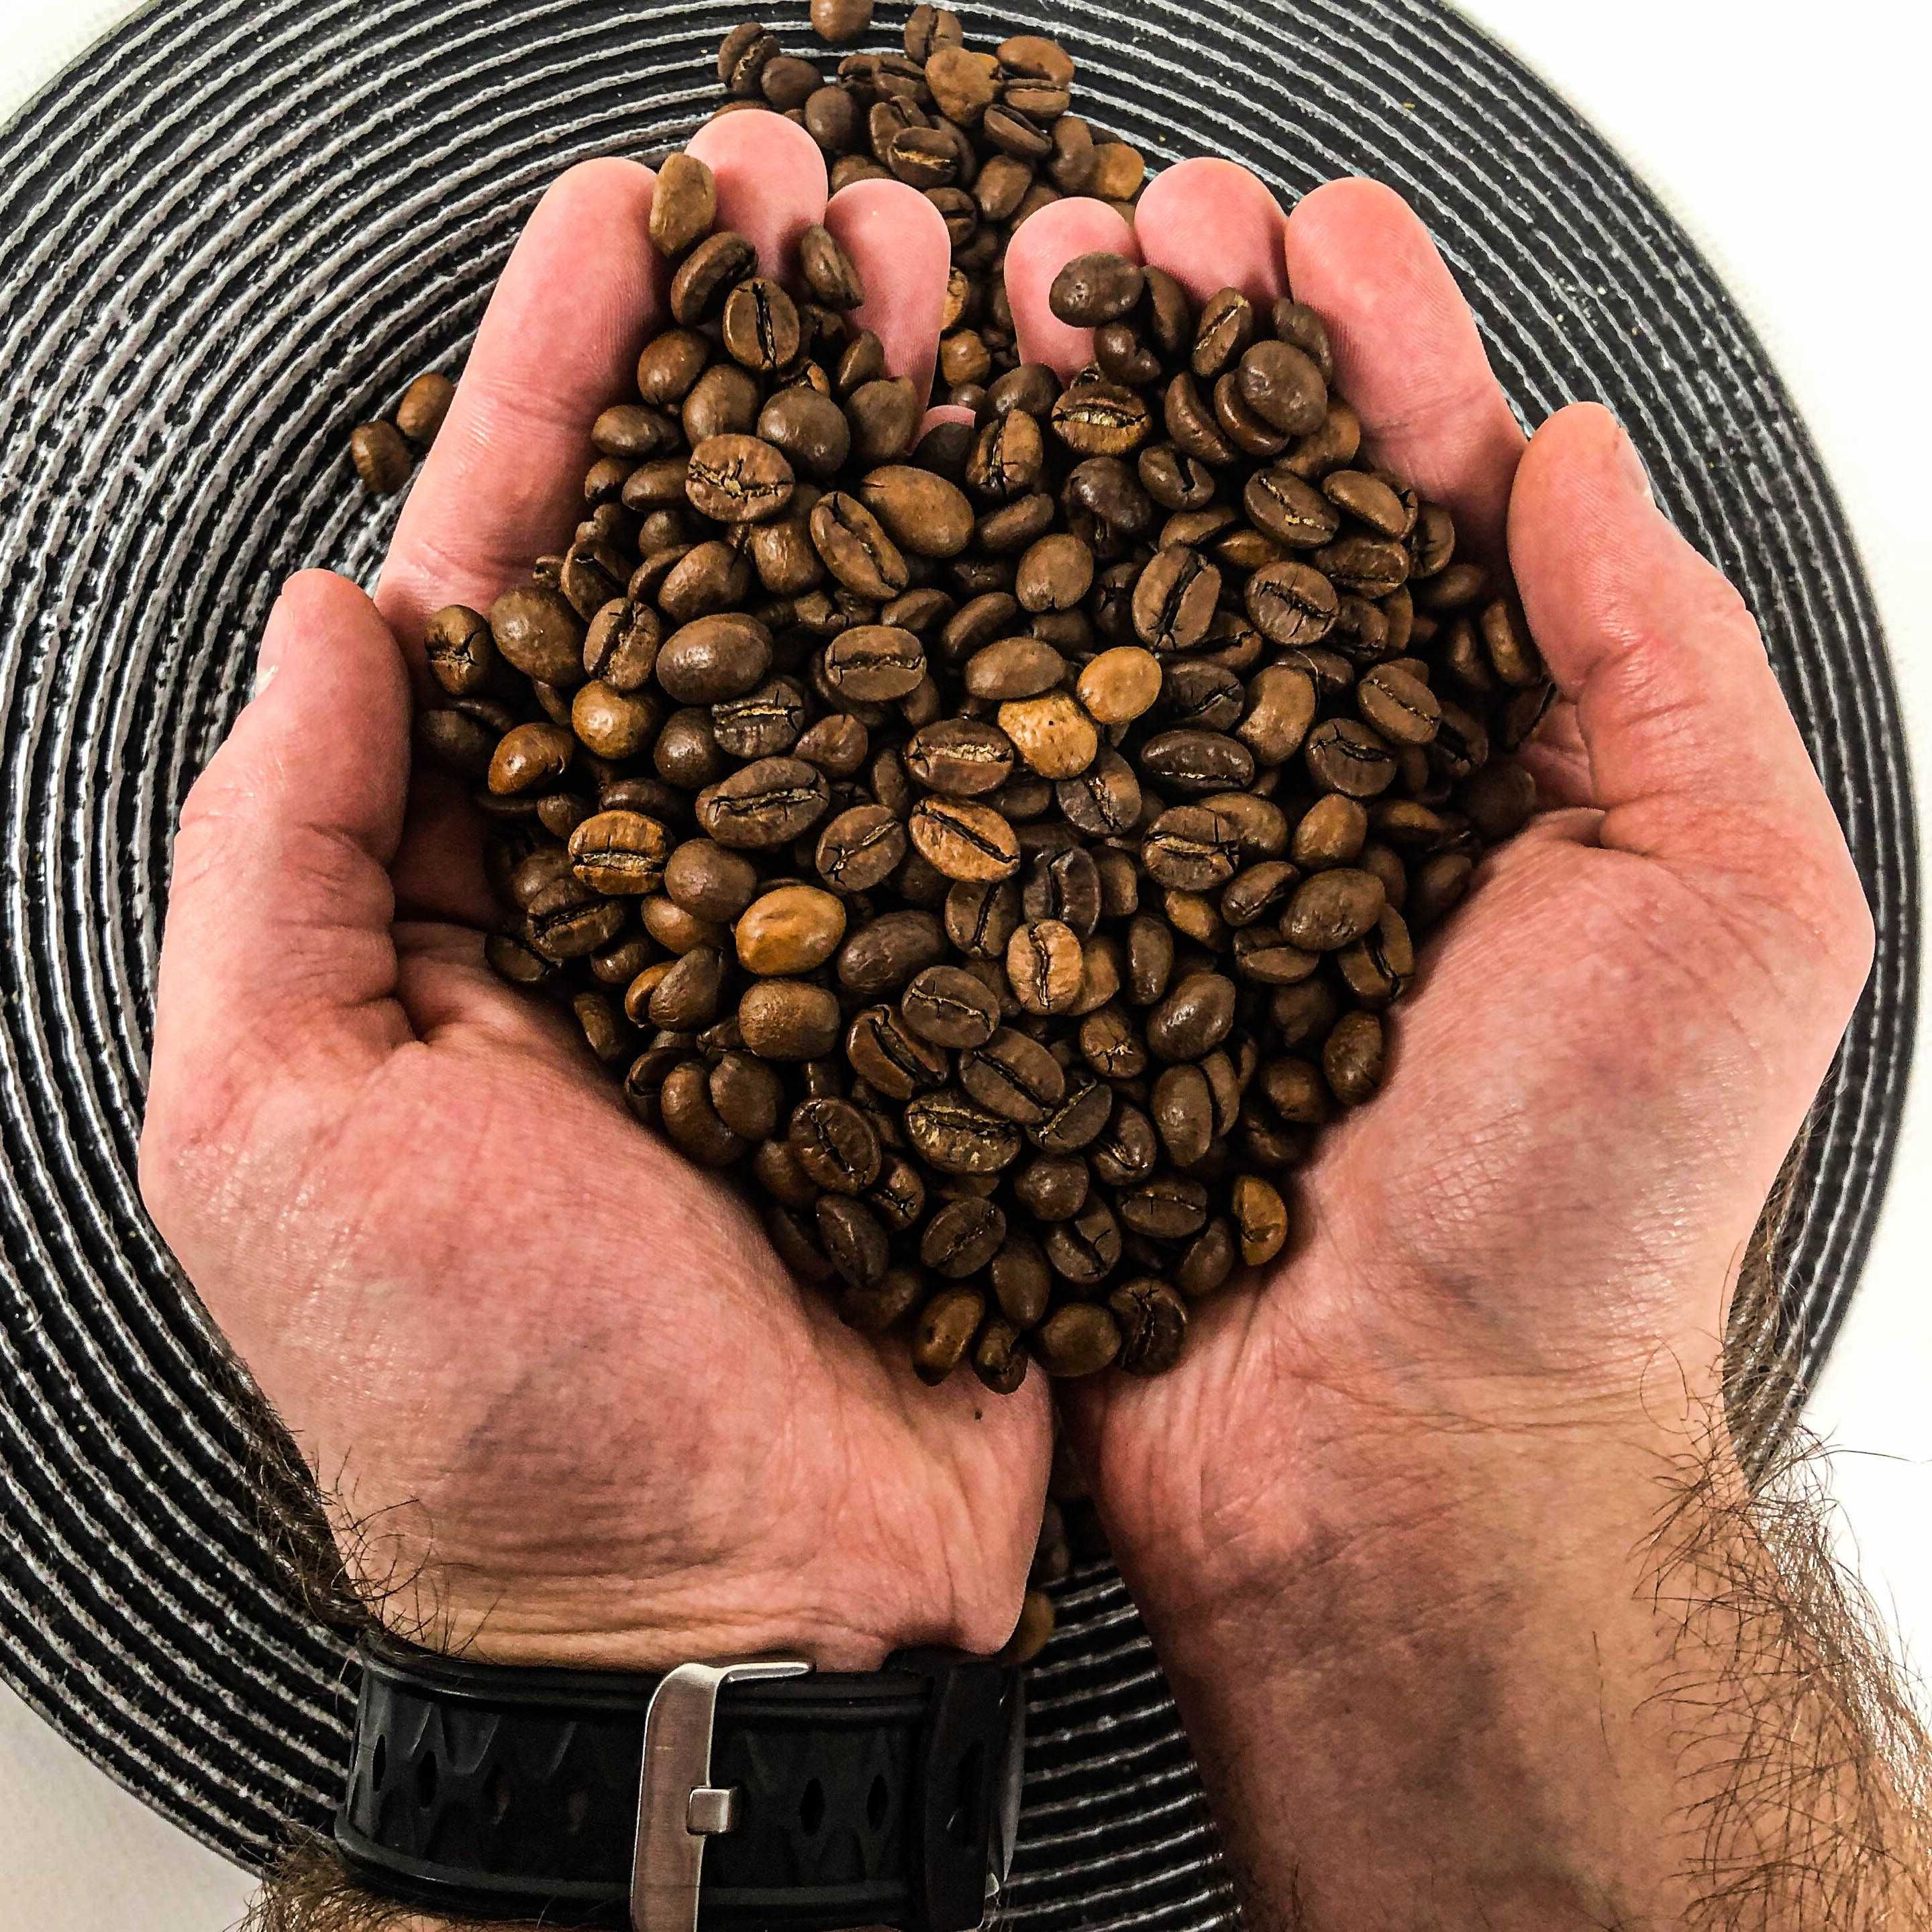 СПЕЦ ПРОПОЗИЦІЯ! Кава в зернах роздріб по оптовим цінам від виробника!